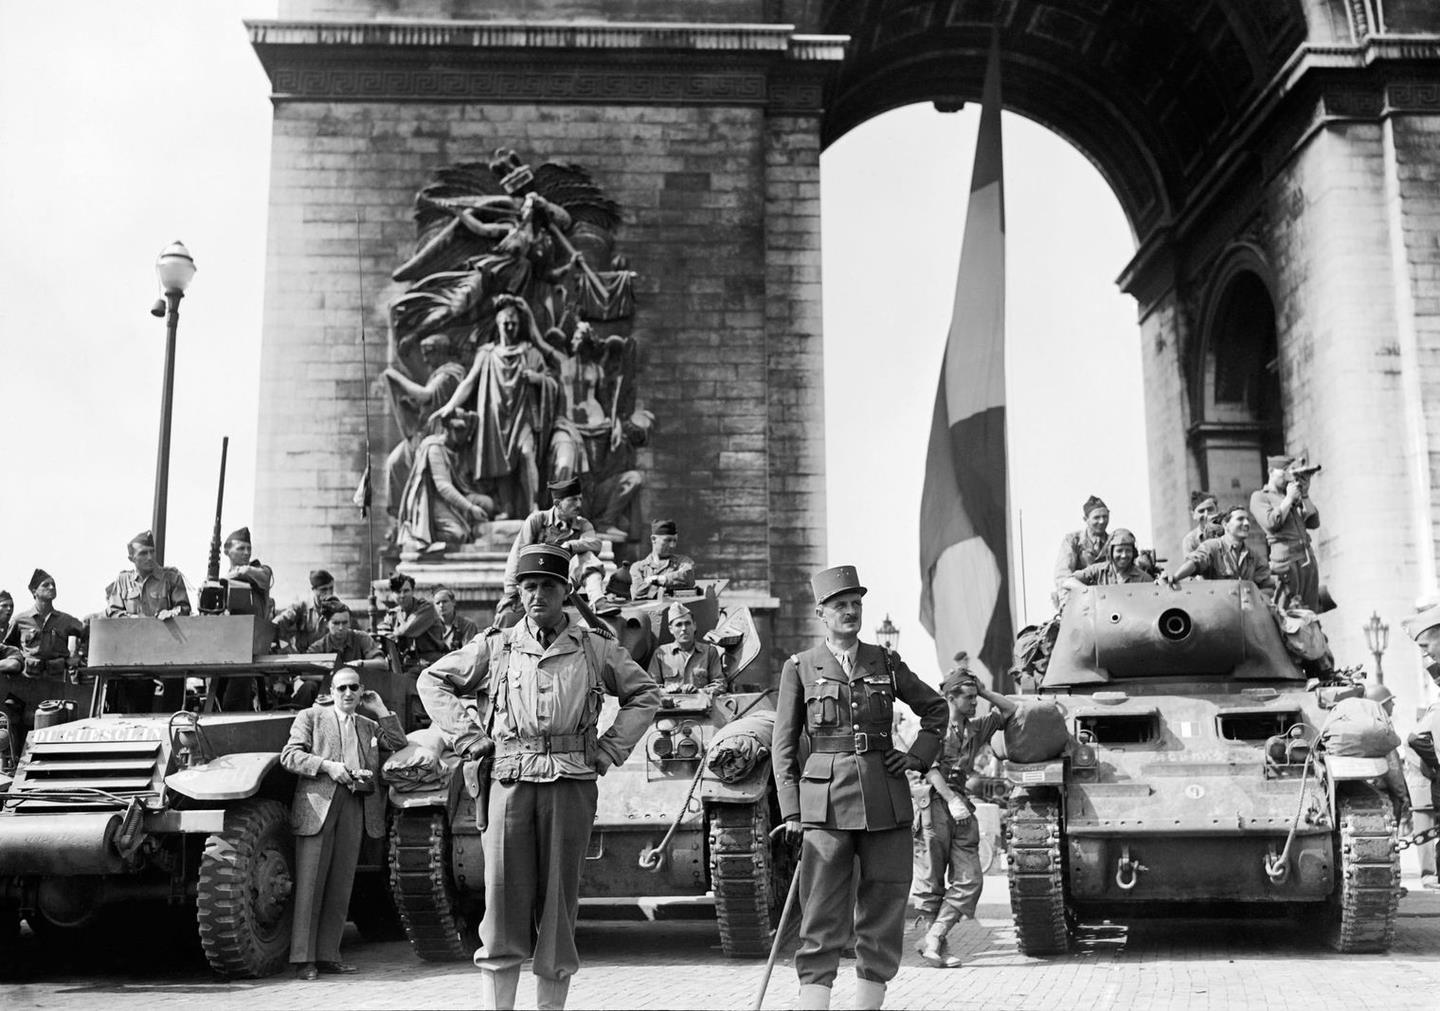 париж в 1945 году